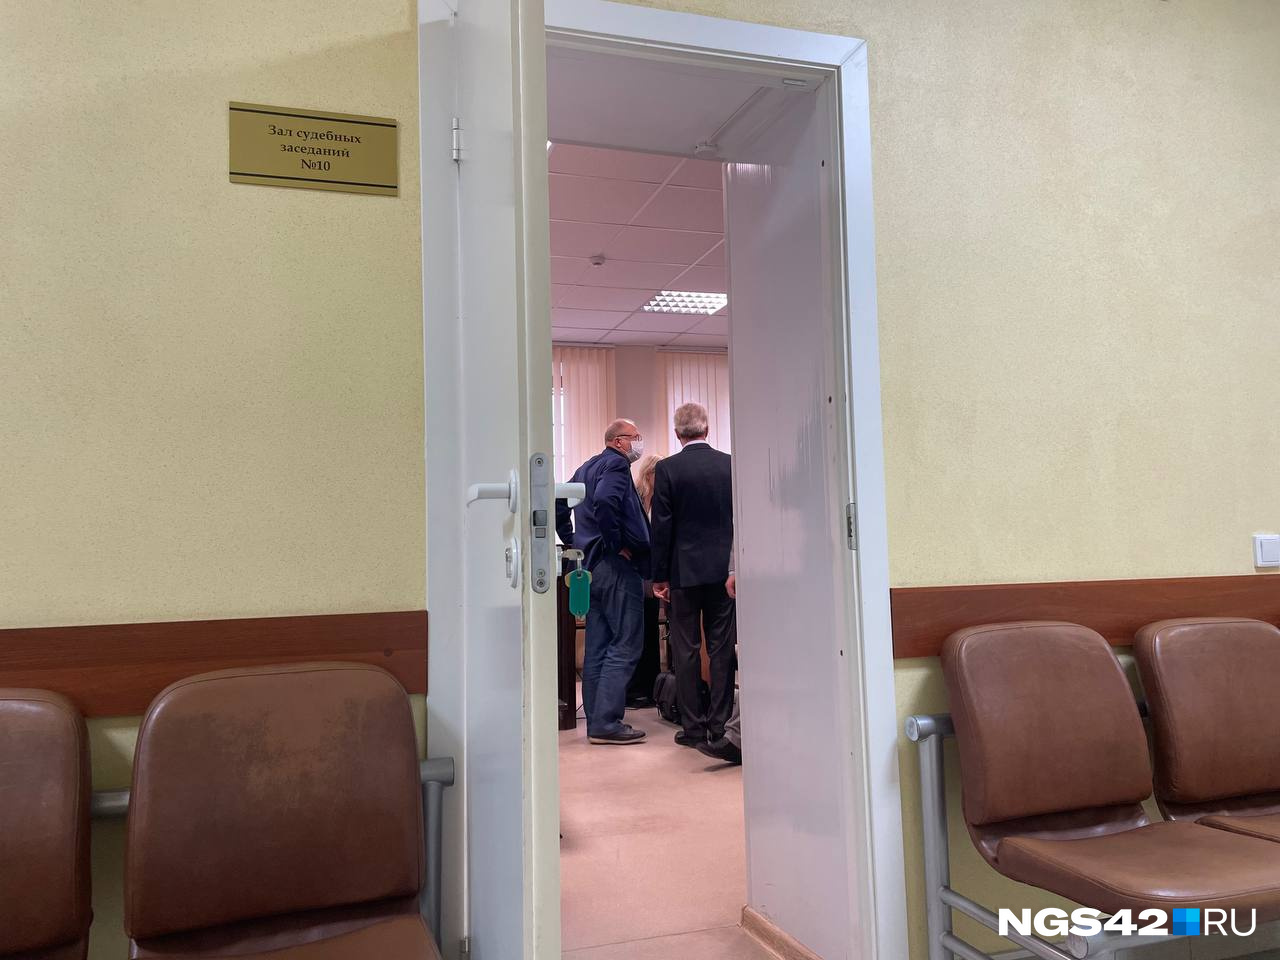 Федяев зашел в зал суда. Пока общается со своими адвокатами